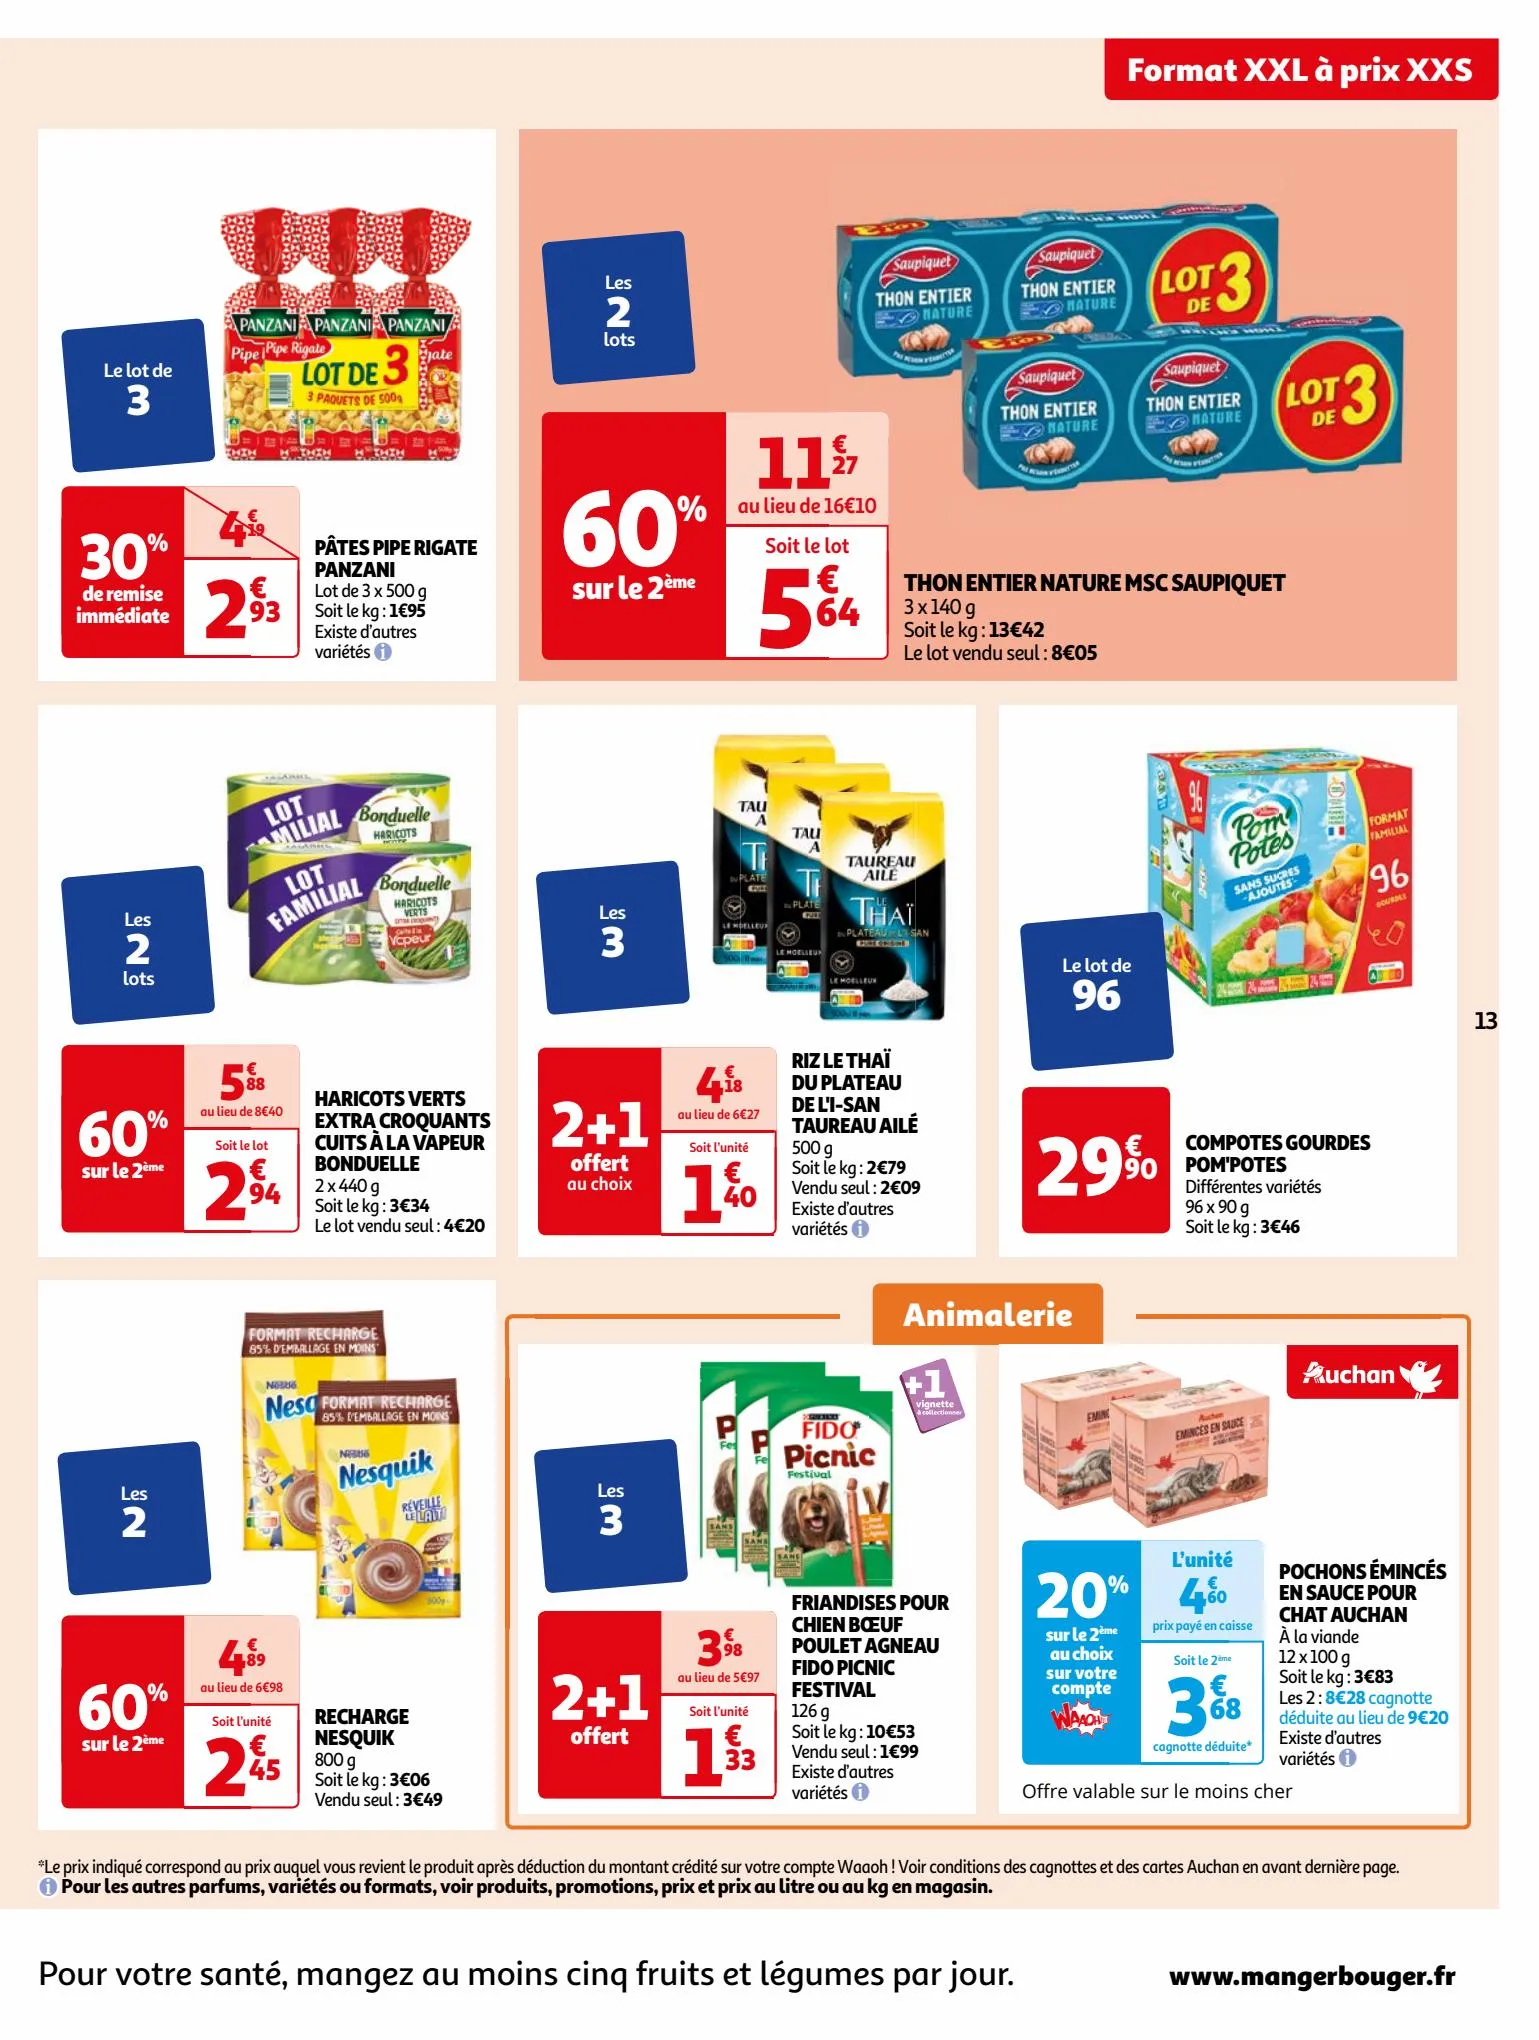 Catalogue Format XXL à prix XXS dans votre supermarché, page 00013